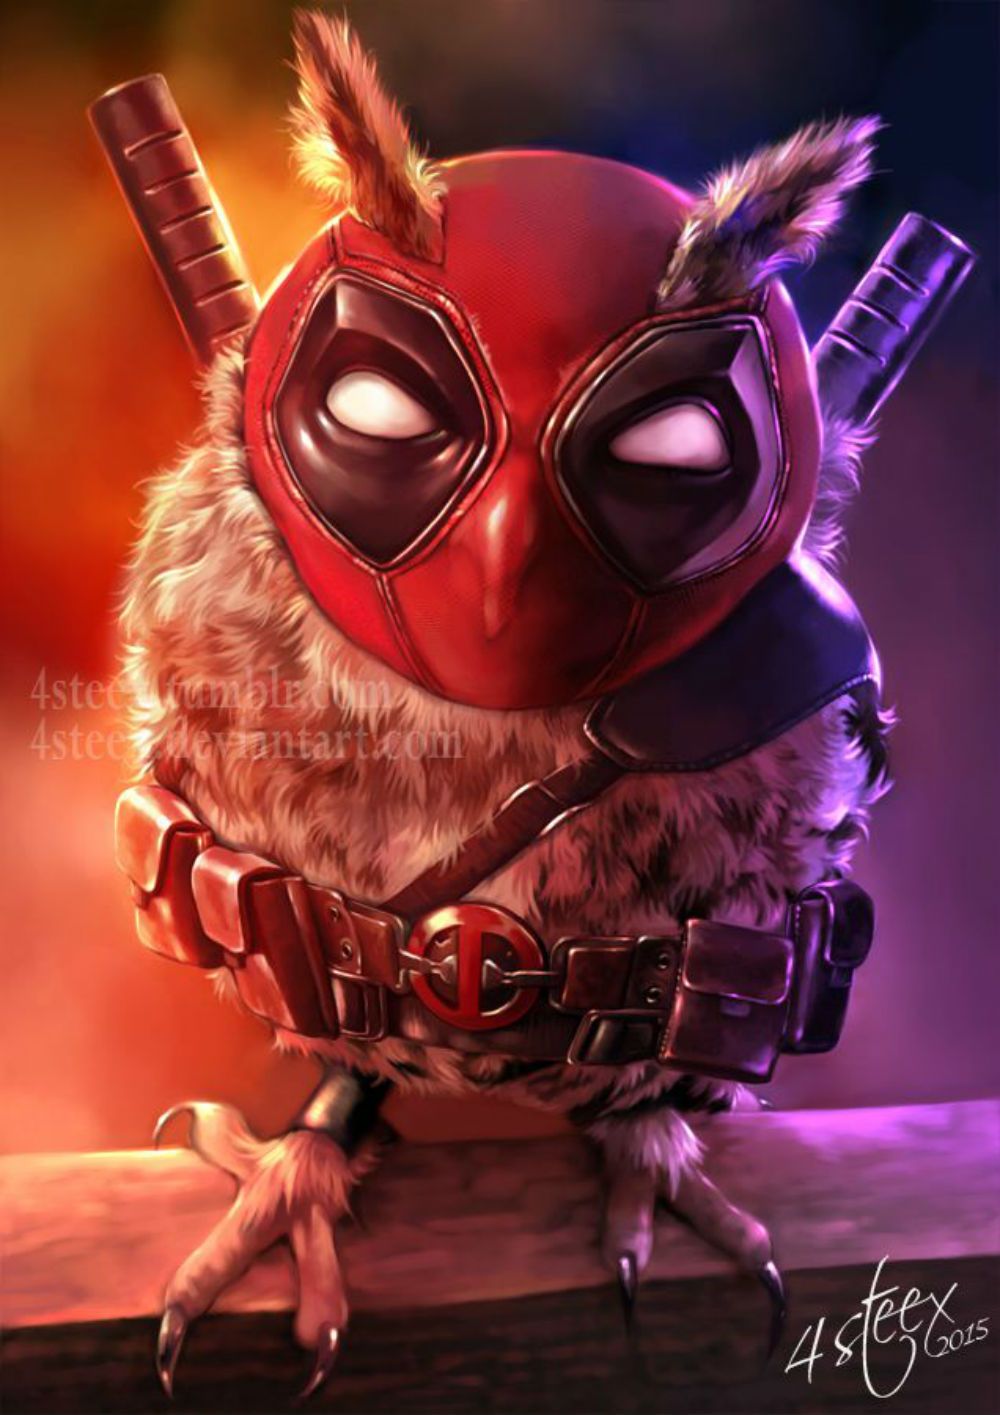 Deadpool-Owl-4steex